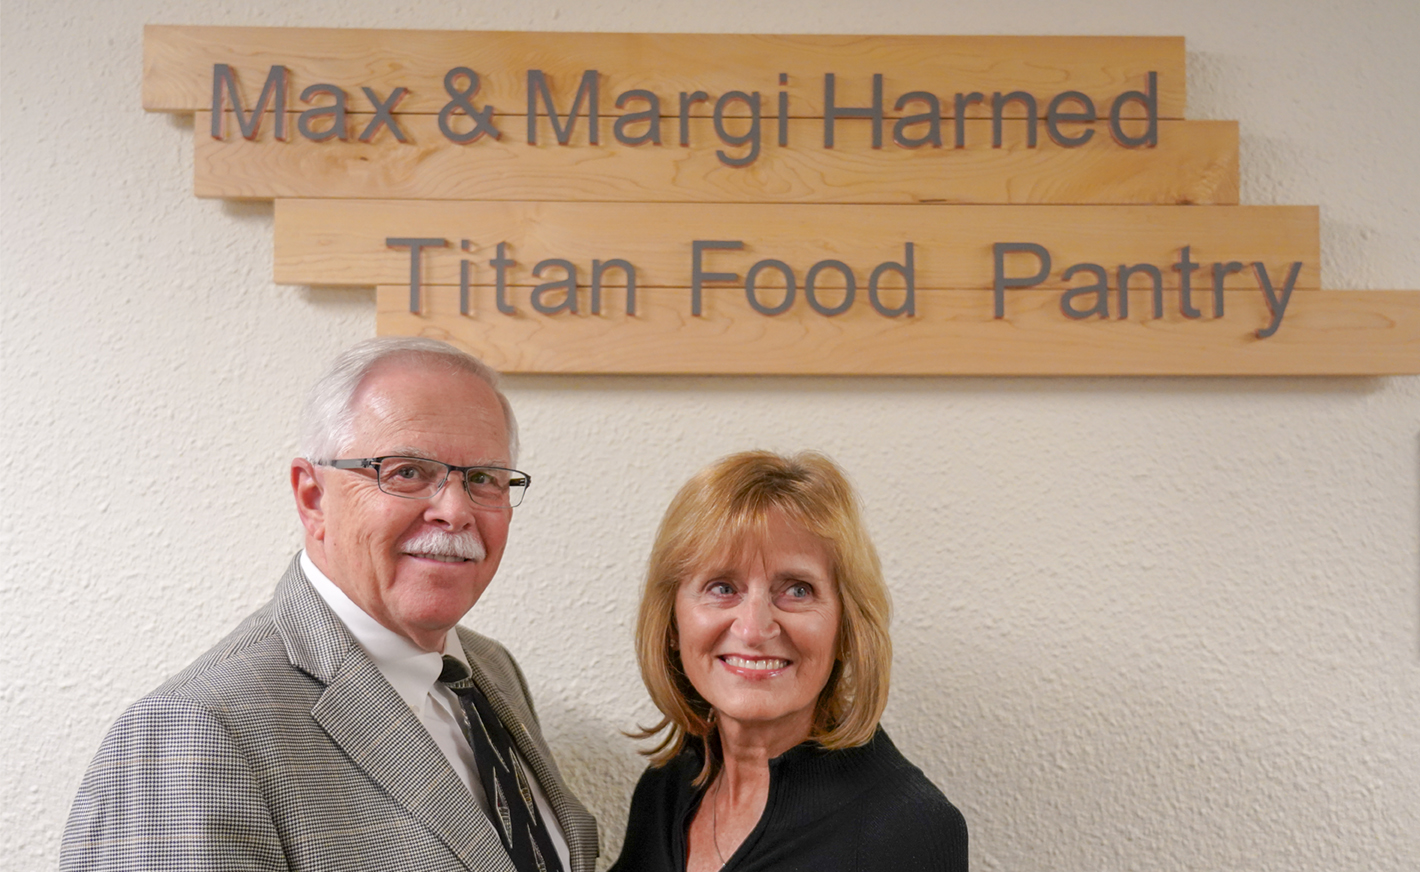 max and margi harned at the food pantry